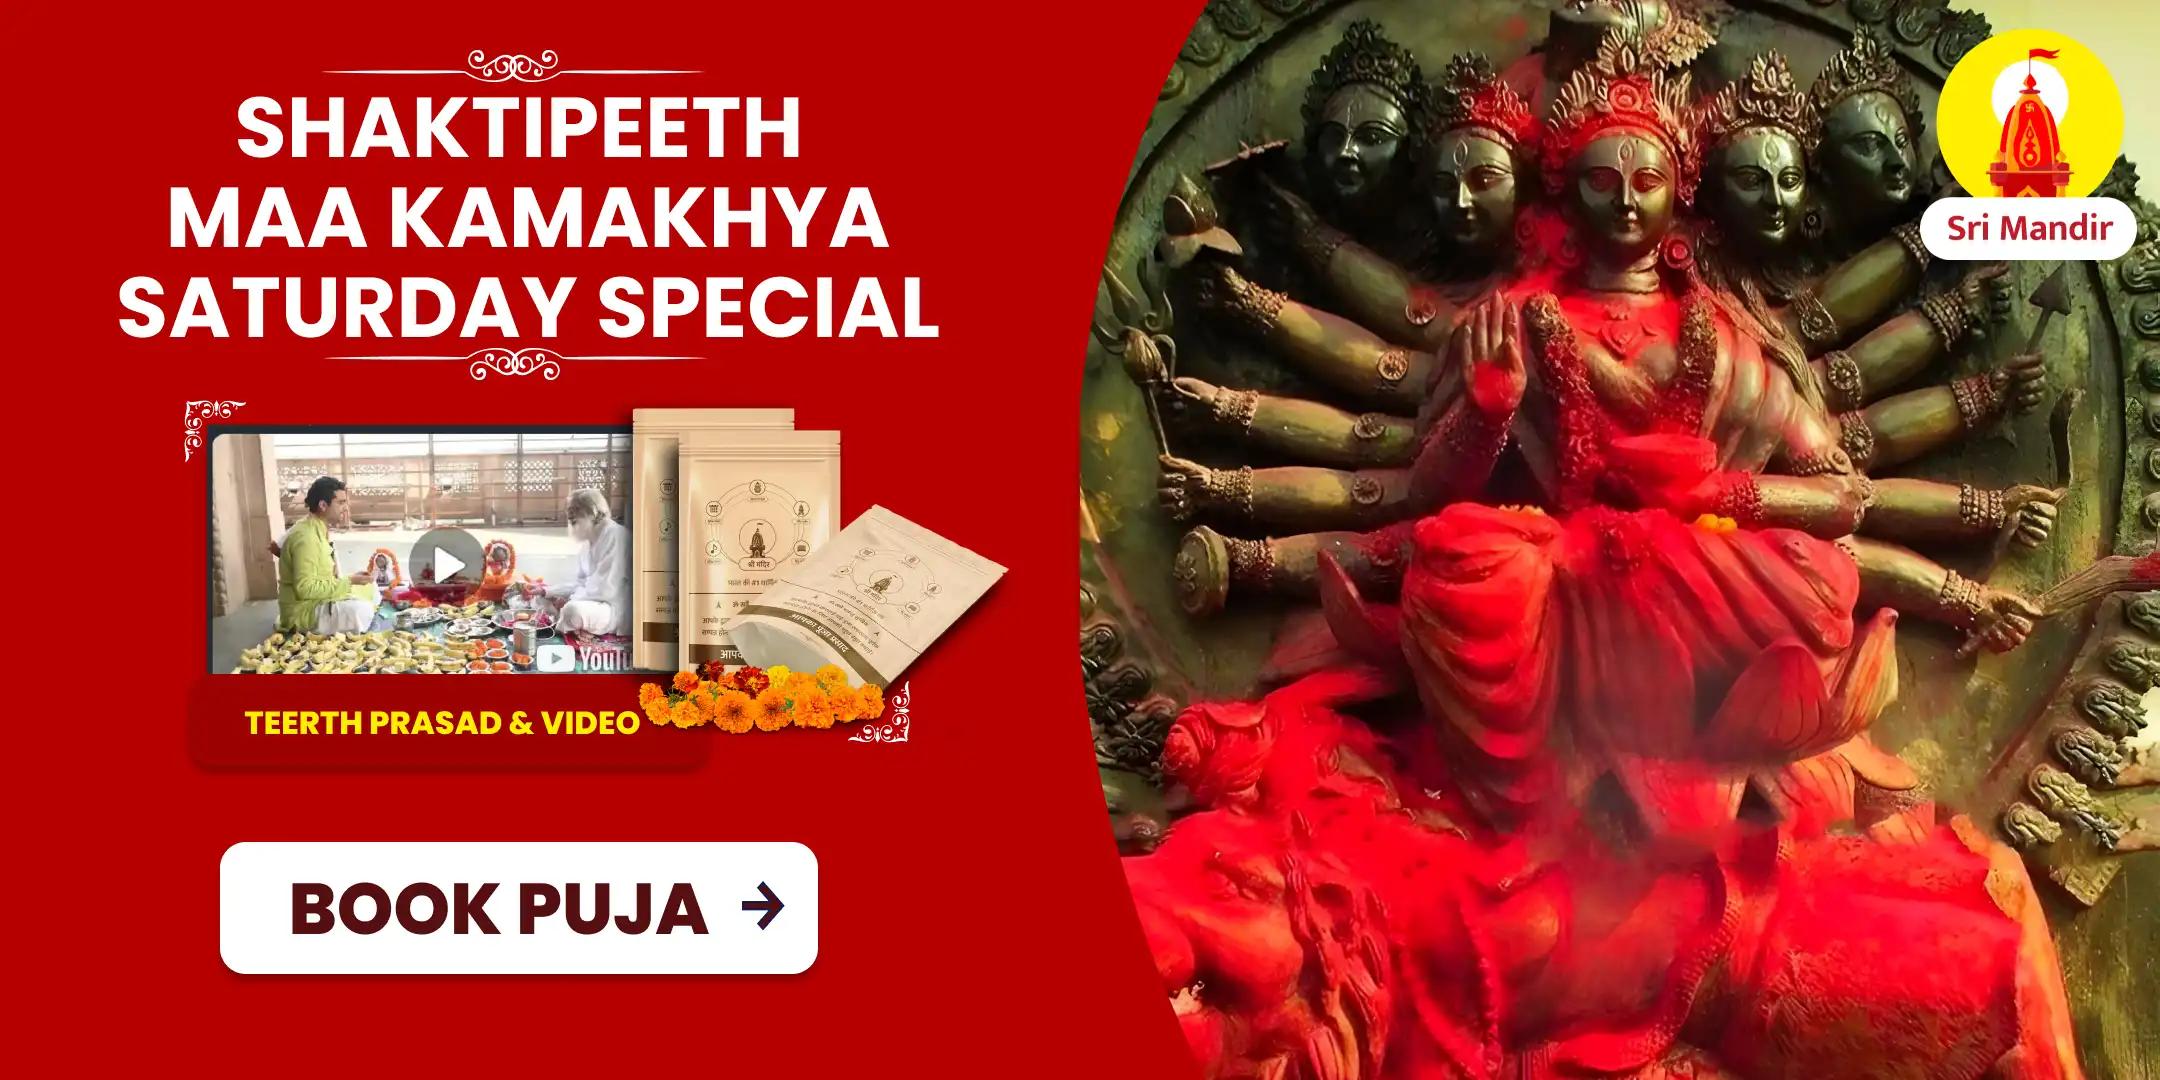 Holi Week Special Shaktipeeth Maa Kamakhya Tantrokta Maha Yagya for Fulfilment of All Desires